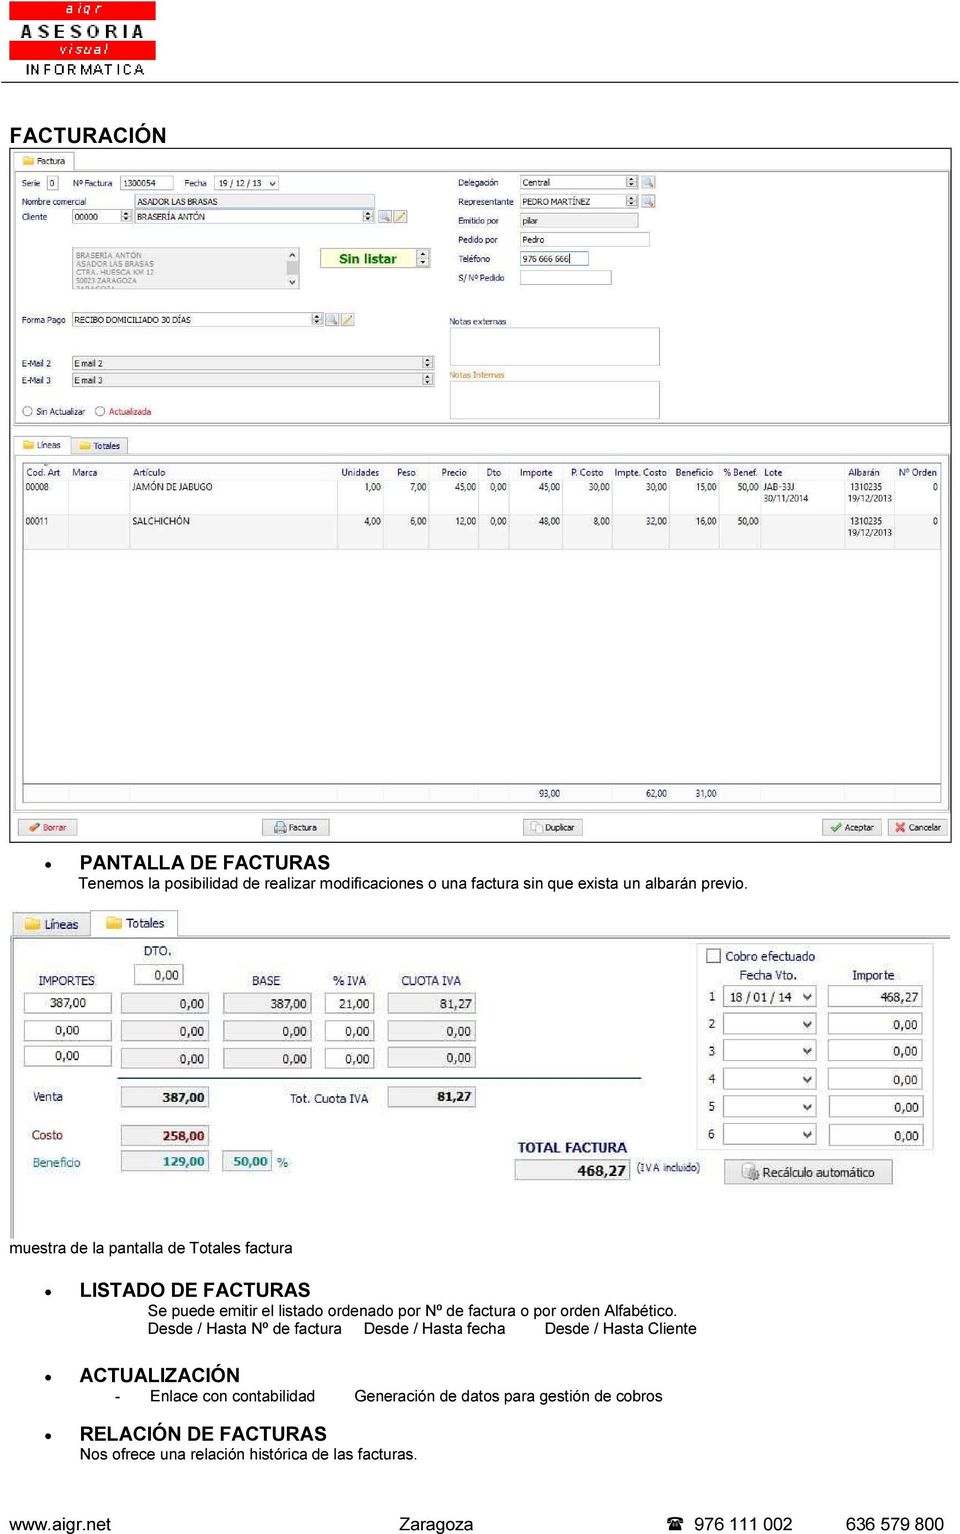 muestra de la pantalla de Totales factura LISTADO DE FACTURAS Se puede emitir el listado ordenado por Nº de factura o por